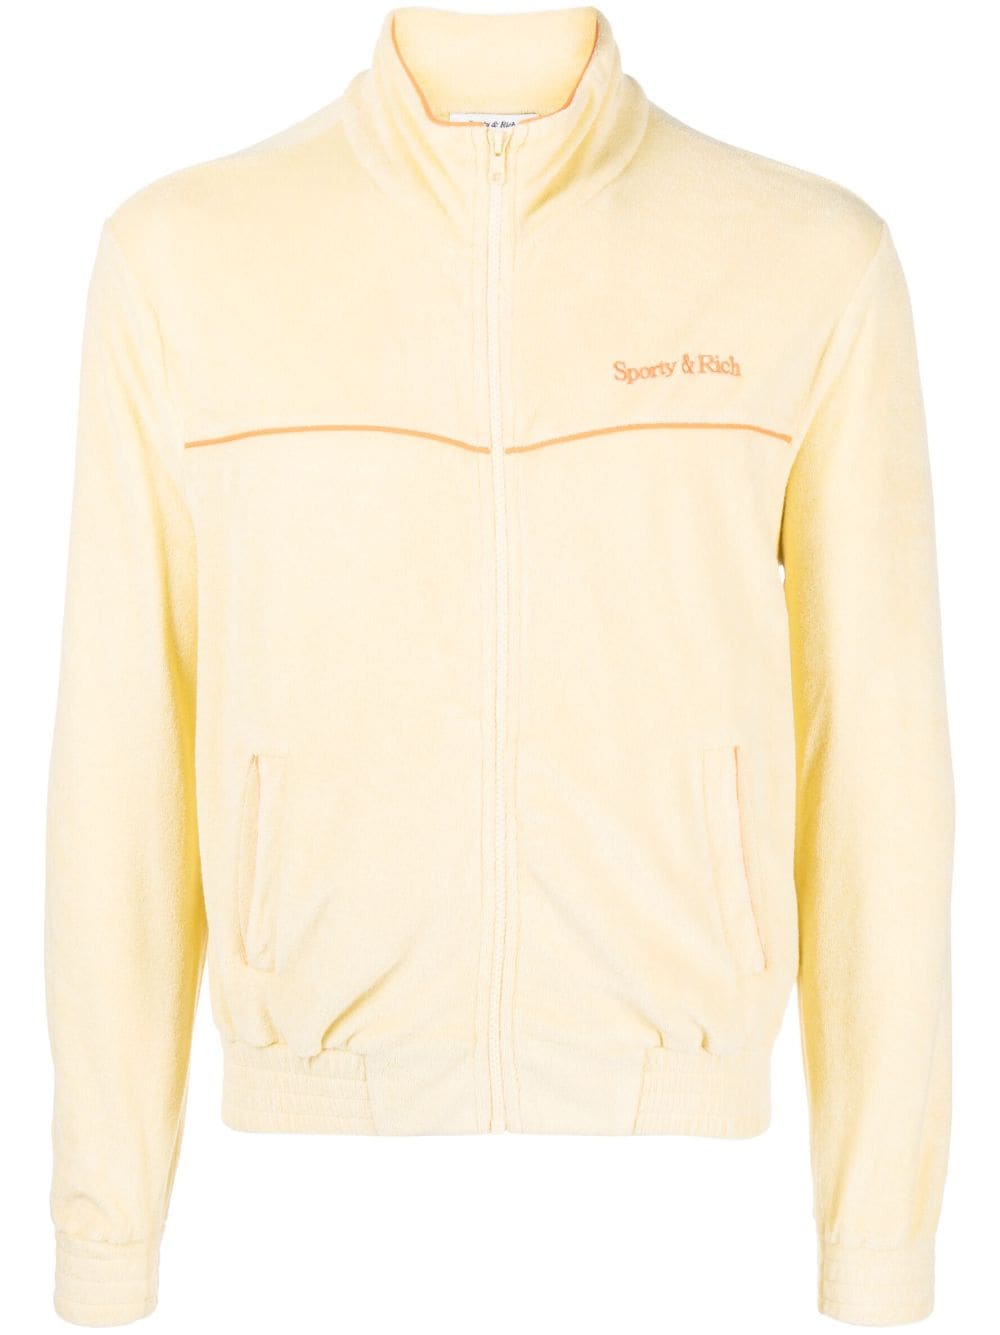 Sporty & Rich logo-embroidered zip-up sweatshirt - Yellow von Sporty & Rich